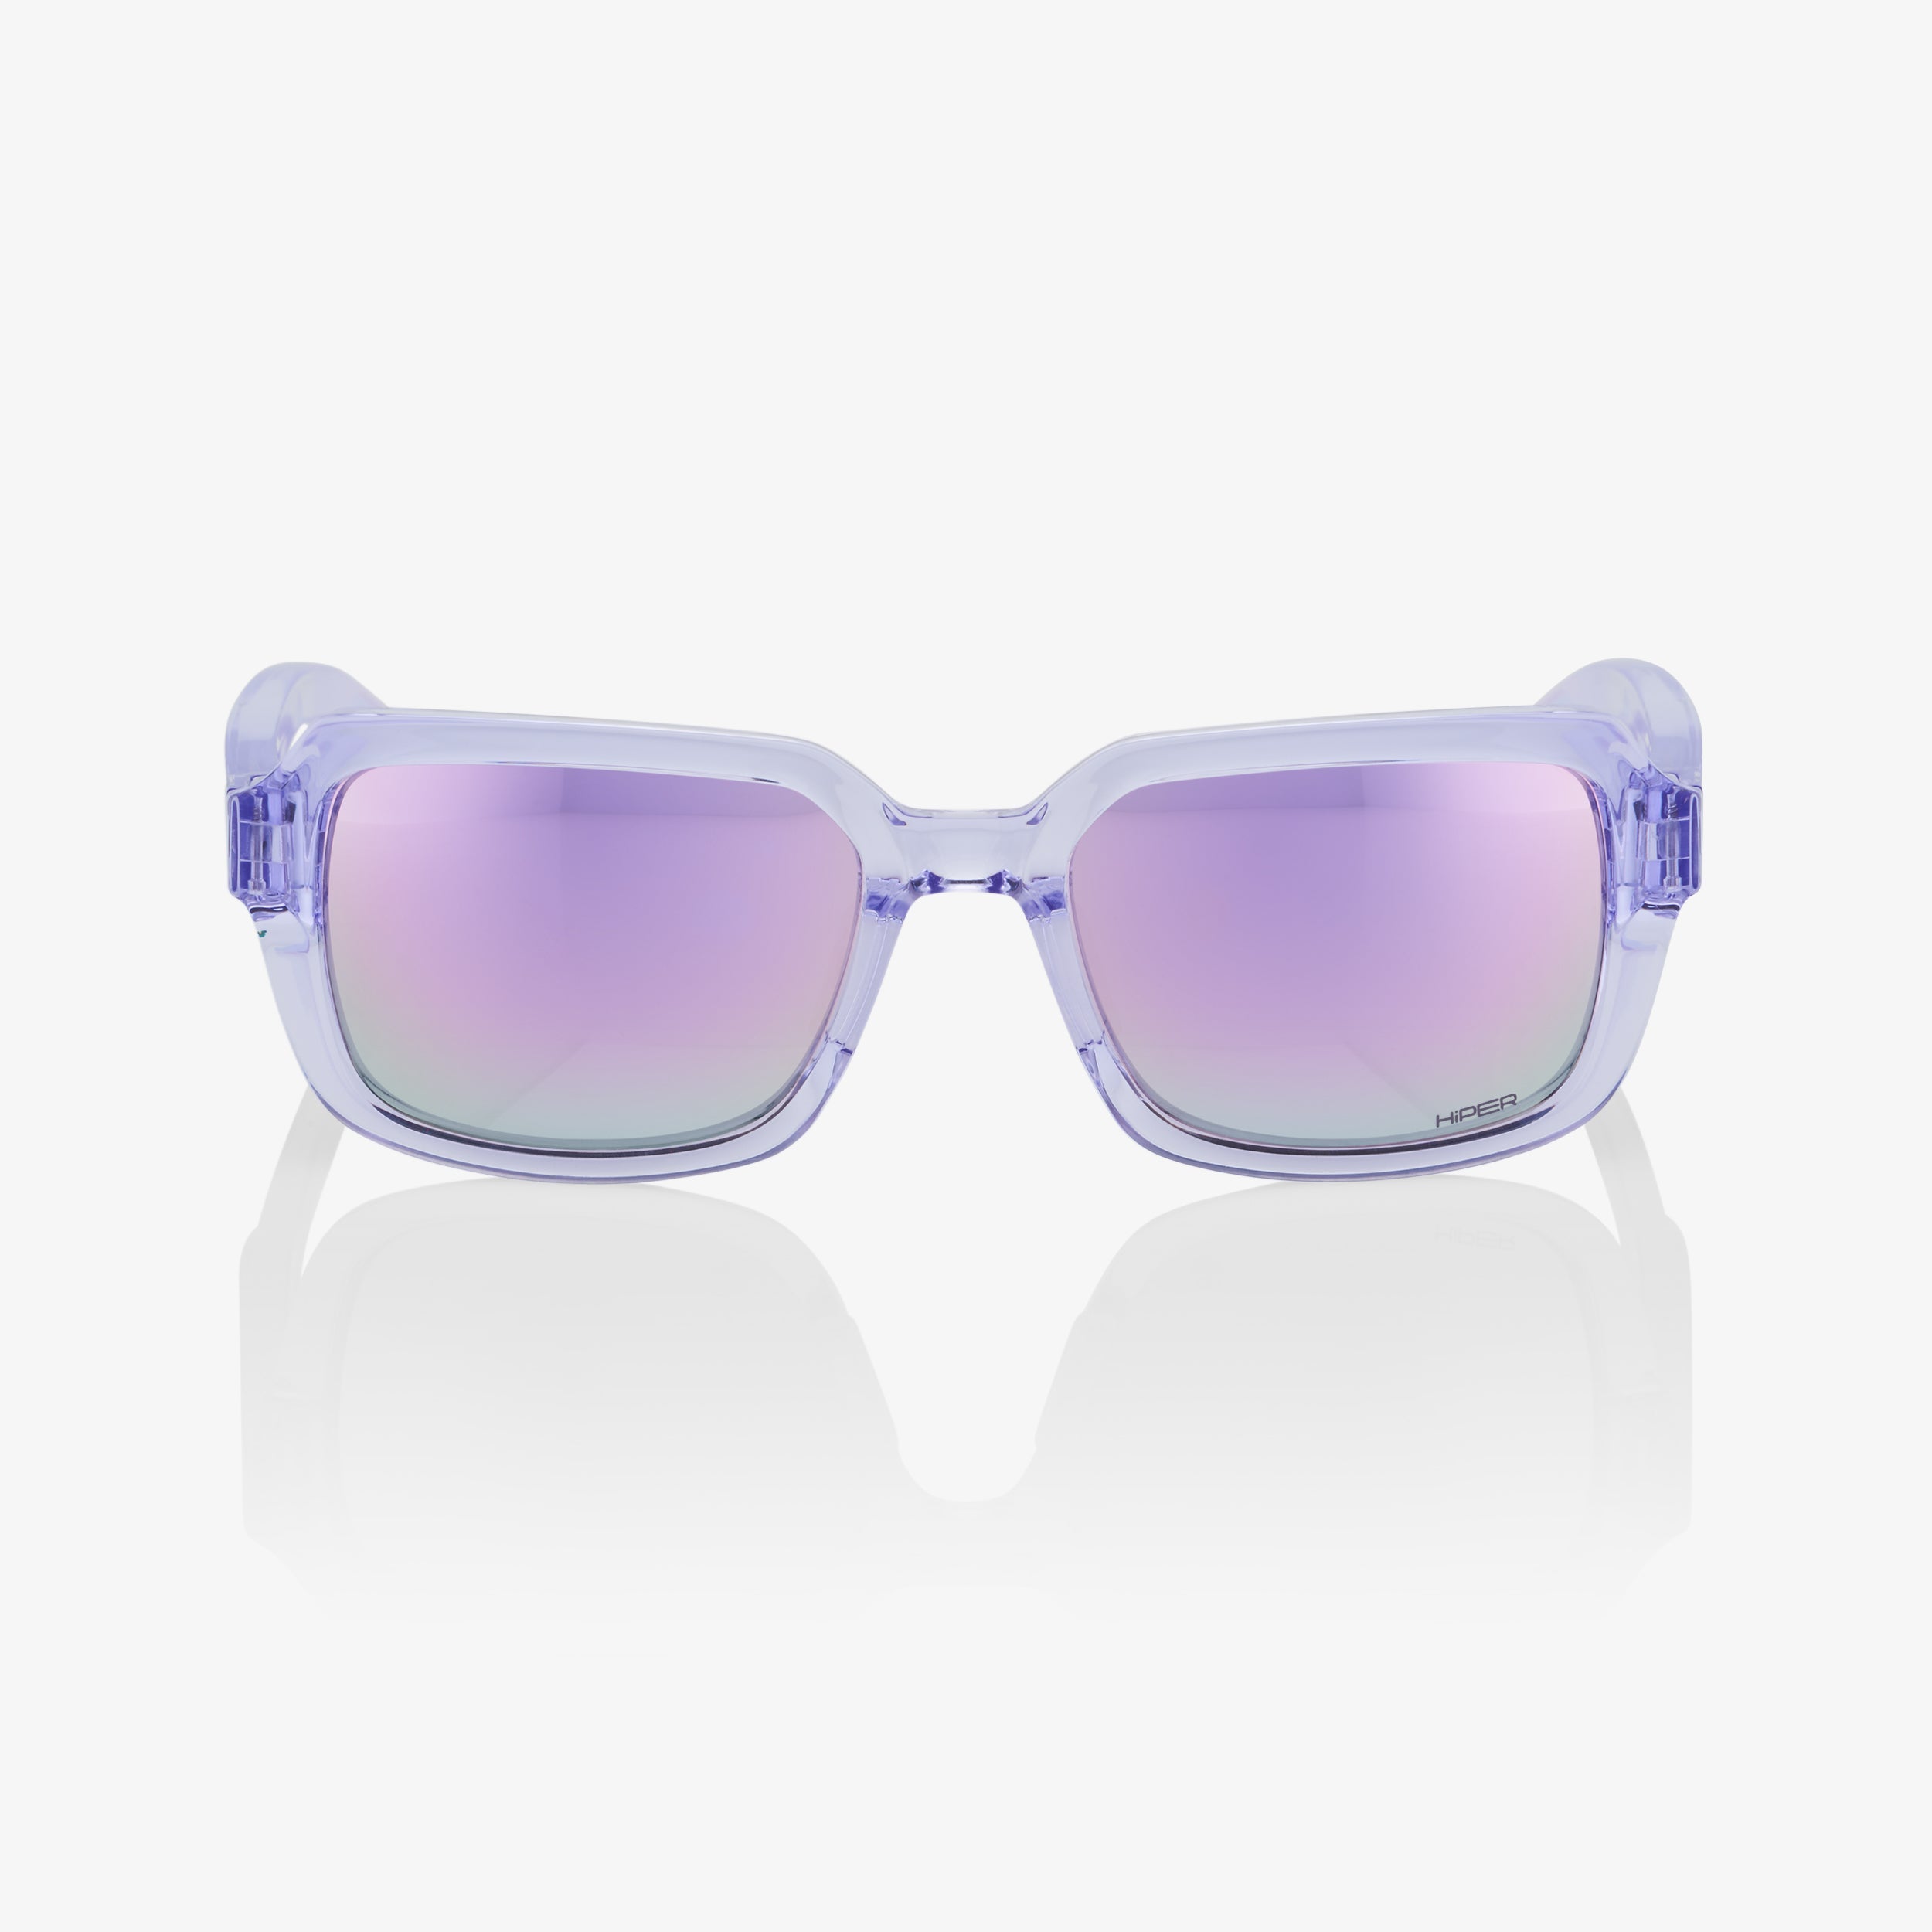 RIDELEY - Polished Translucent Lavender - HiPER Lavender Mirror Lens